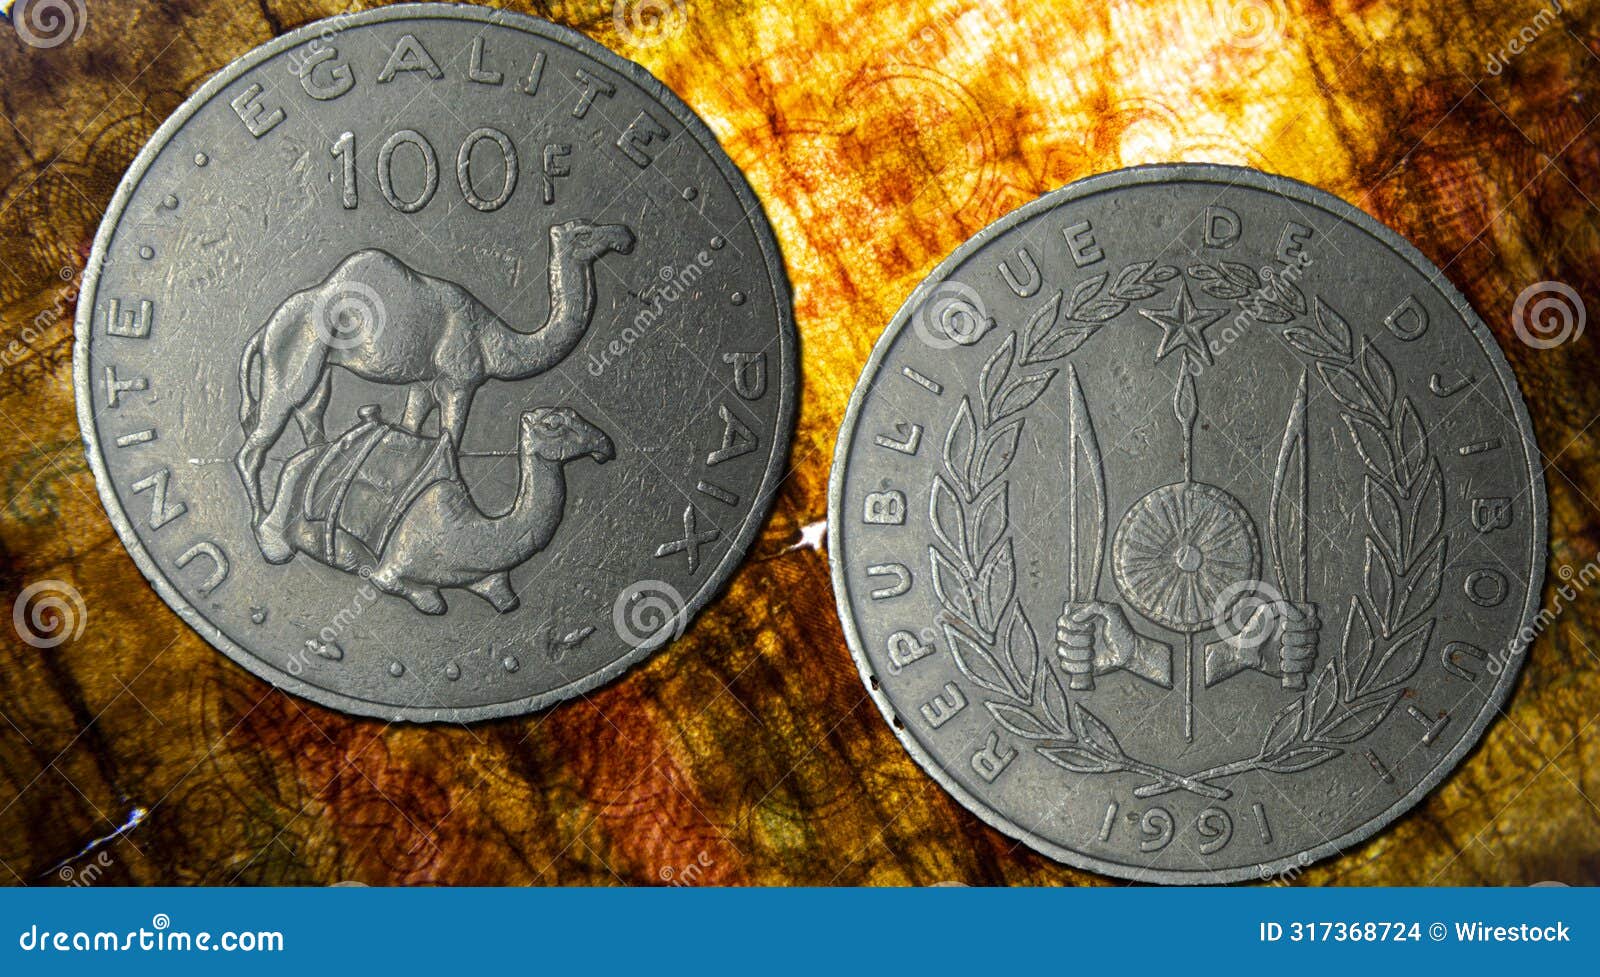 republic of djibouti franc coin